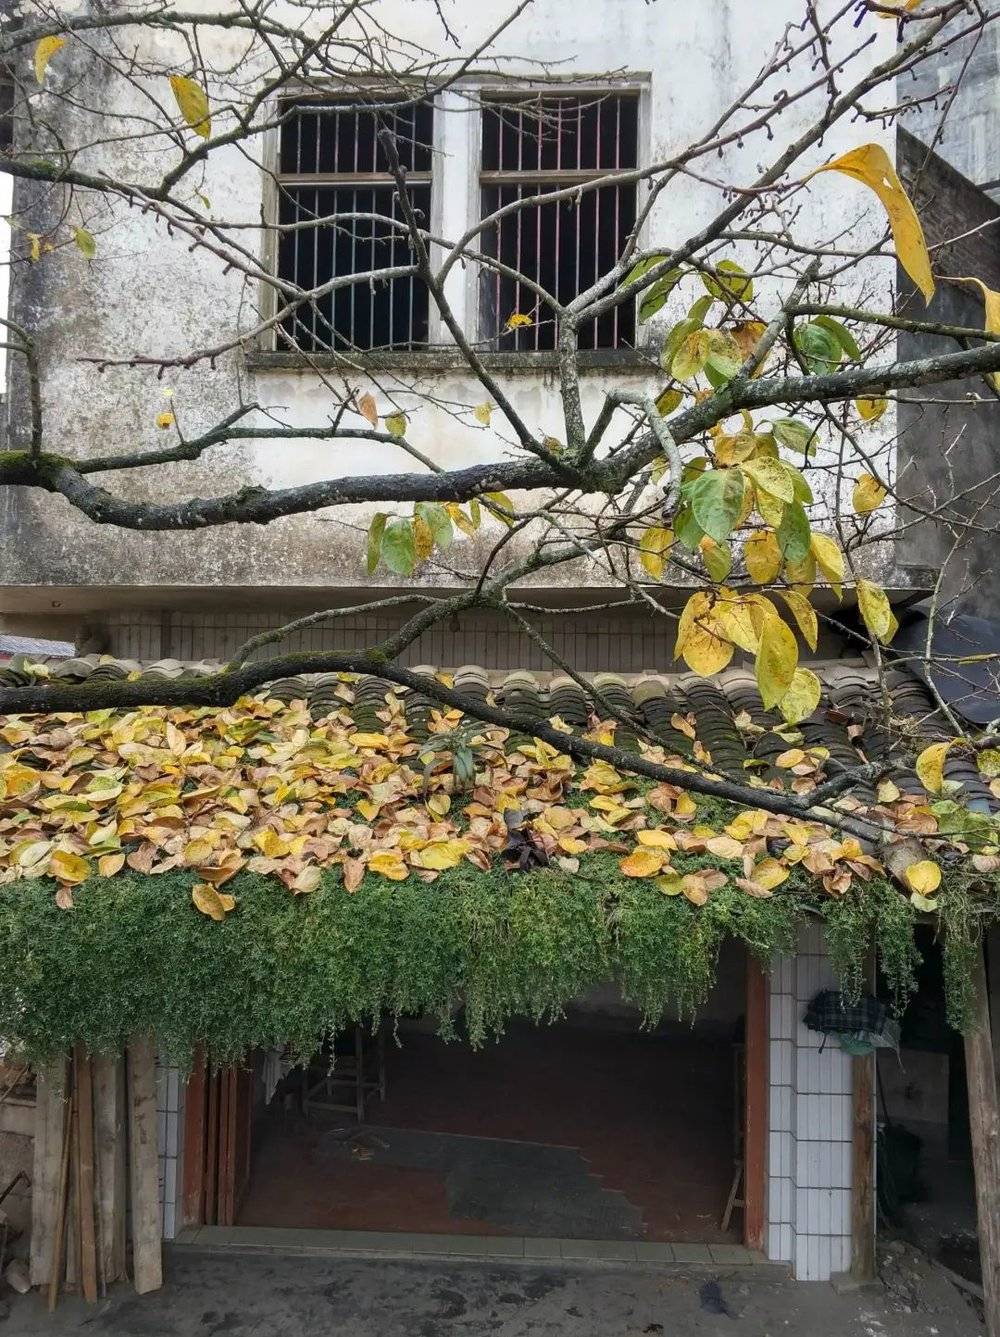 2017年12月14日，赖村。邻居家，我小时候会来这里下象棋和剪头发，后来几个年轻人抽烟不注意，引起大火灾，烧毁好几间房屋。这是其中一间，屋前种着一棵柿子树。